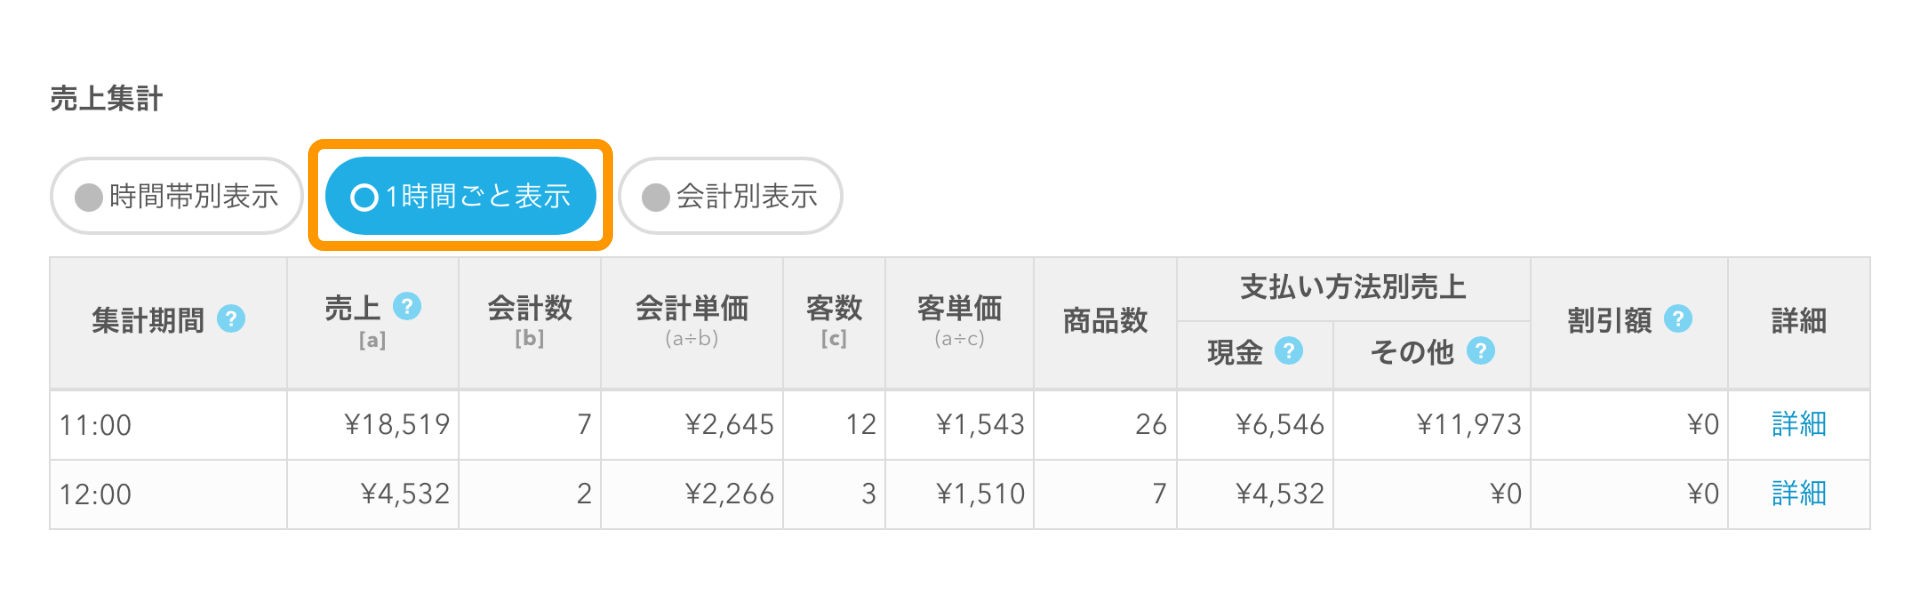 Airレジ 日別売上画面 時間帯別表示